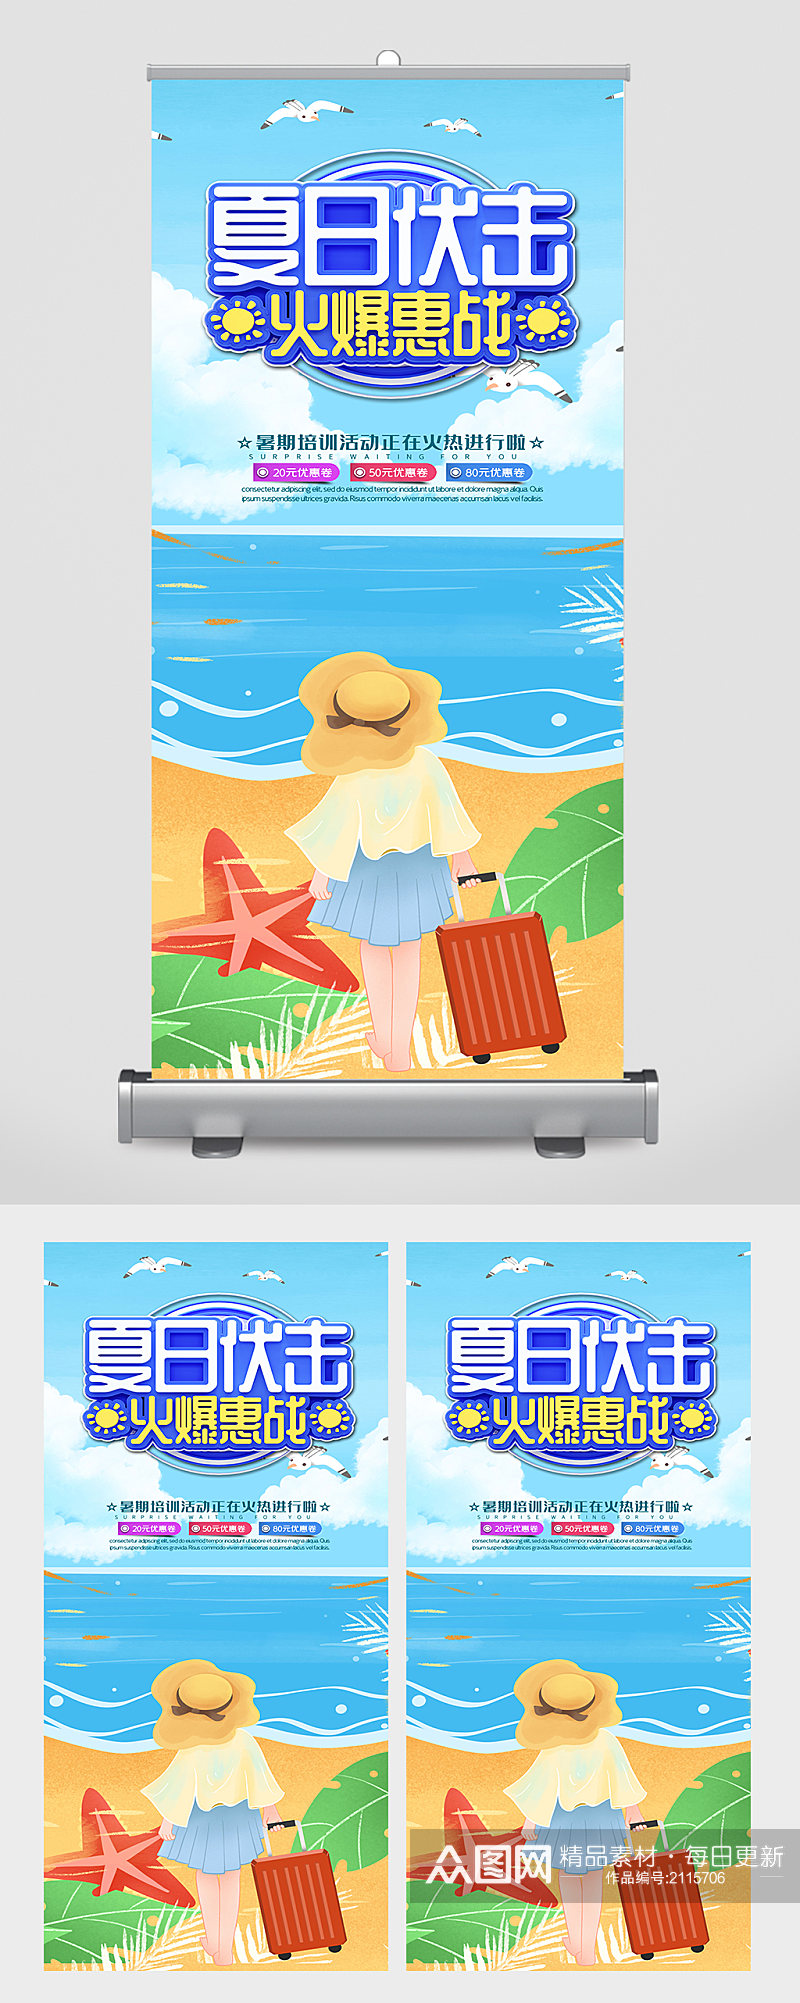 暑假夏令营内容宣传海报易拉宝素材